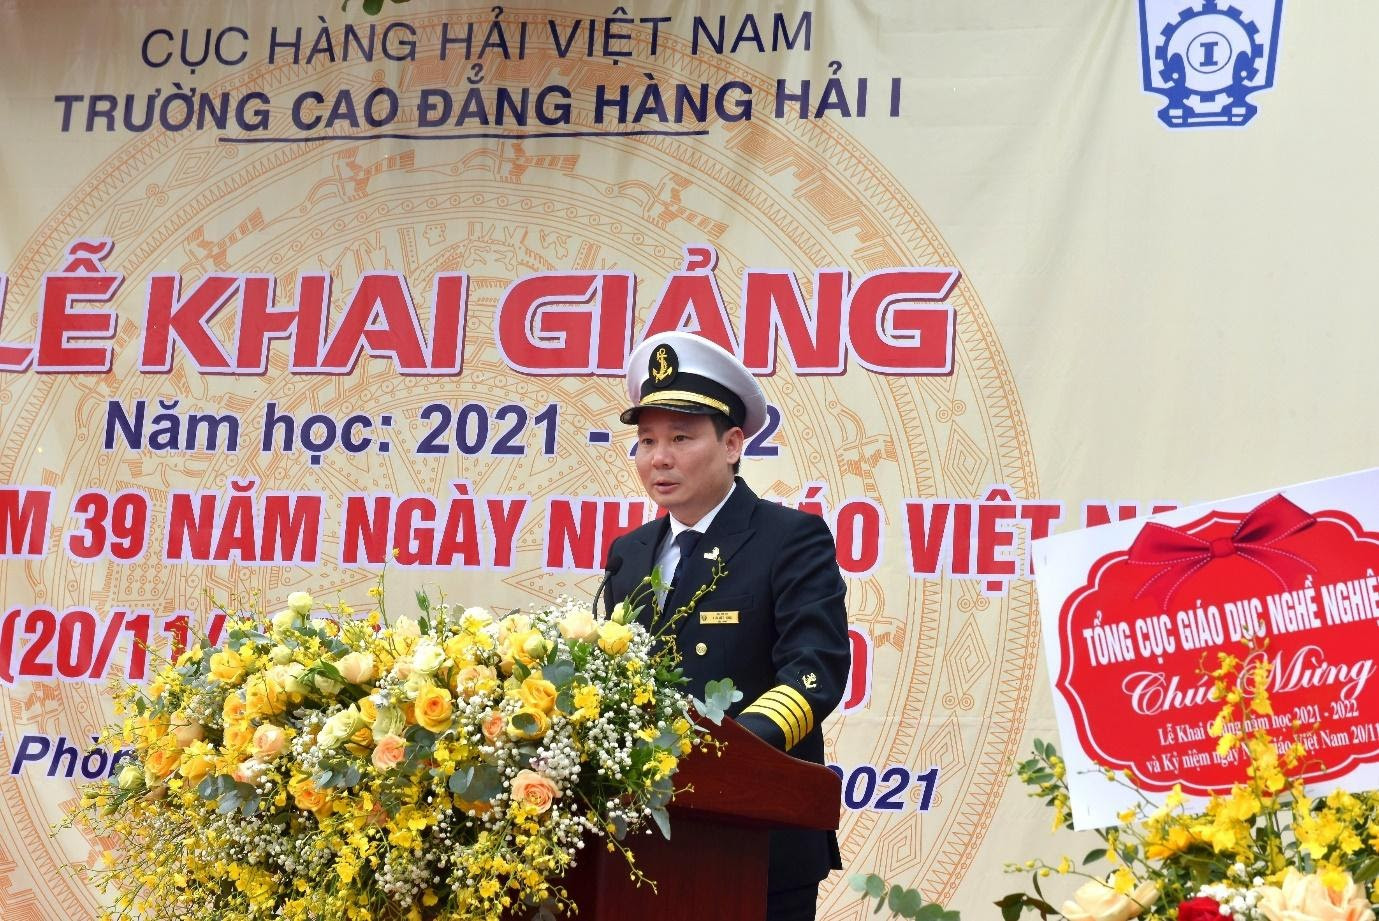 TS. Lưu Việt Hùng – Bí thư đảng ủy, Hiệu trưởng nhà trường phát biểu khai mạc và phát động phong trào thi đua trong năm học 2021-2022